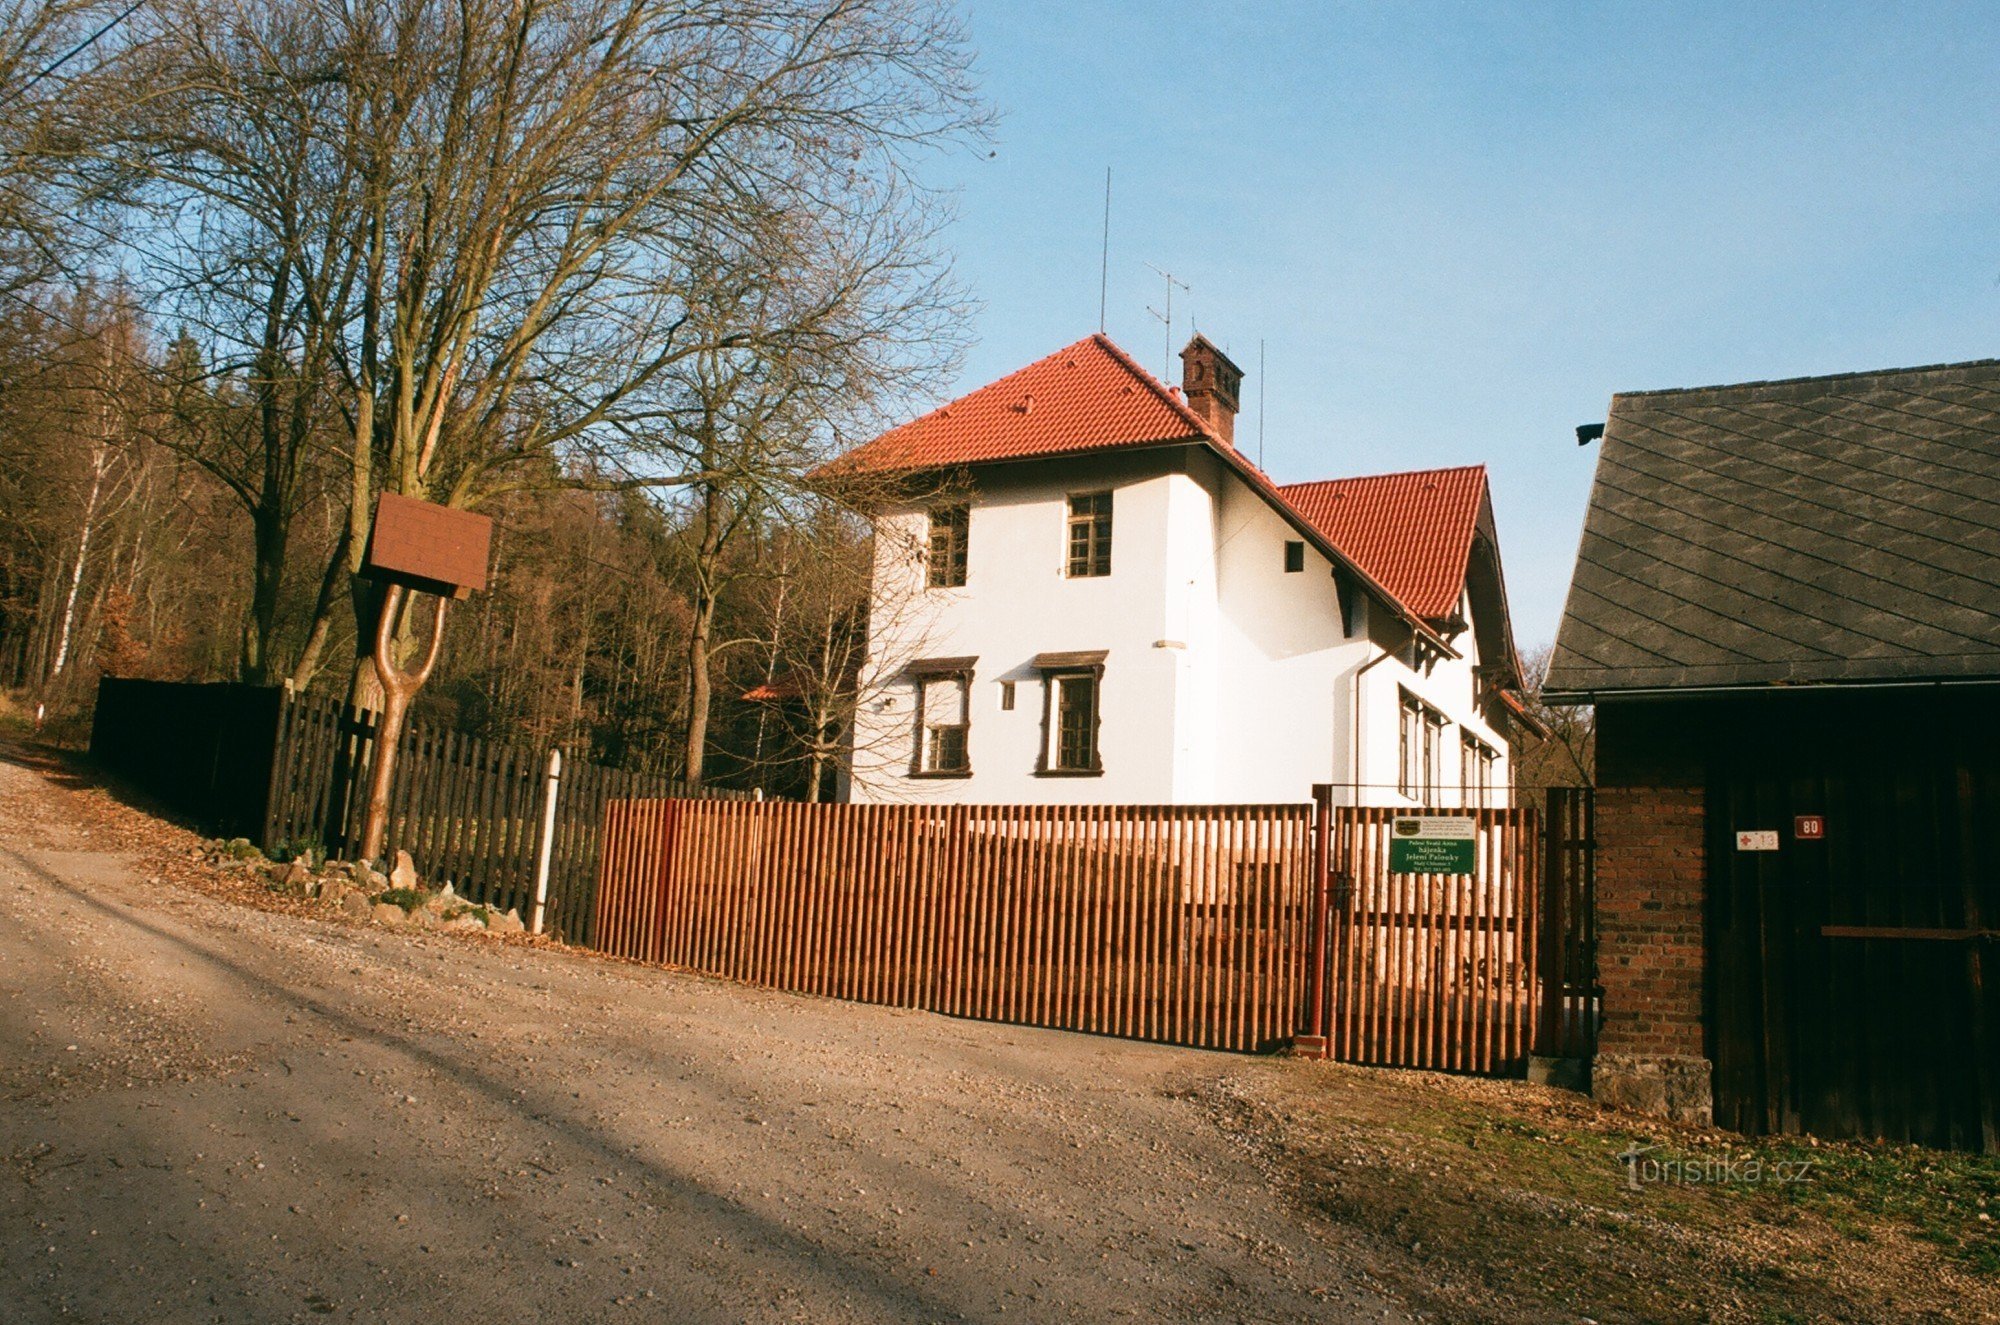 Khu bảo tồn trò chơi Jelení palouky gần Hradec